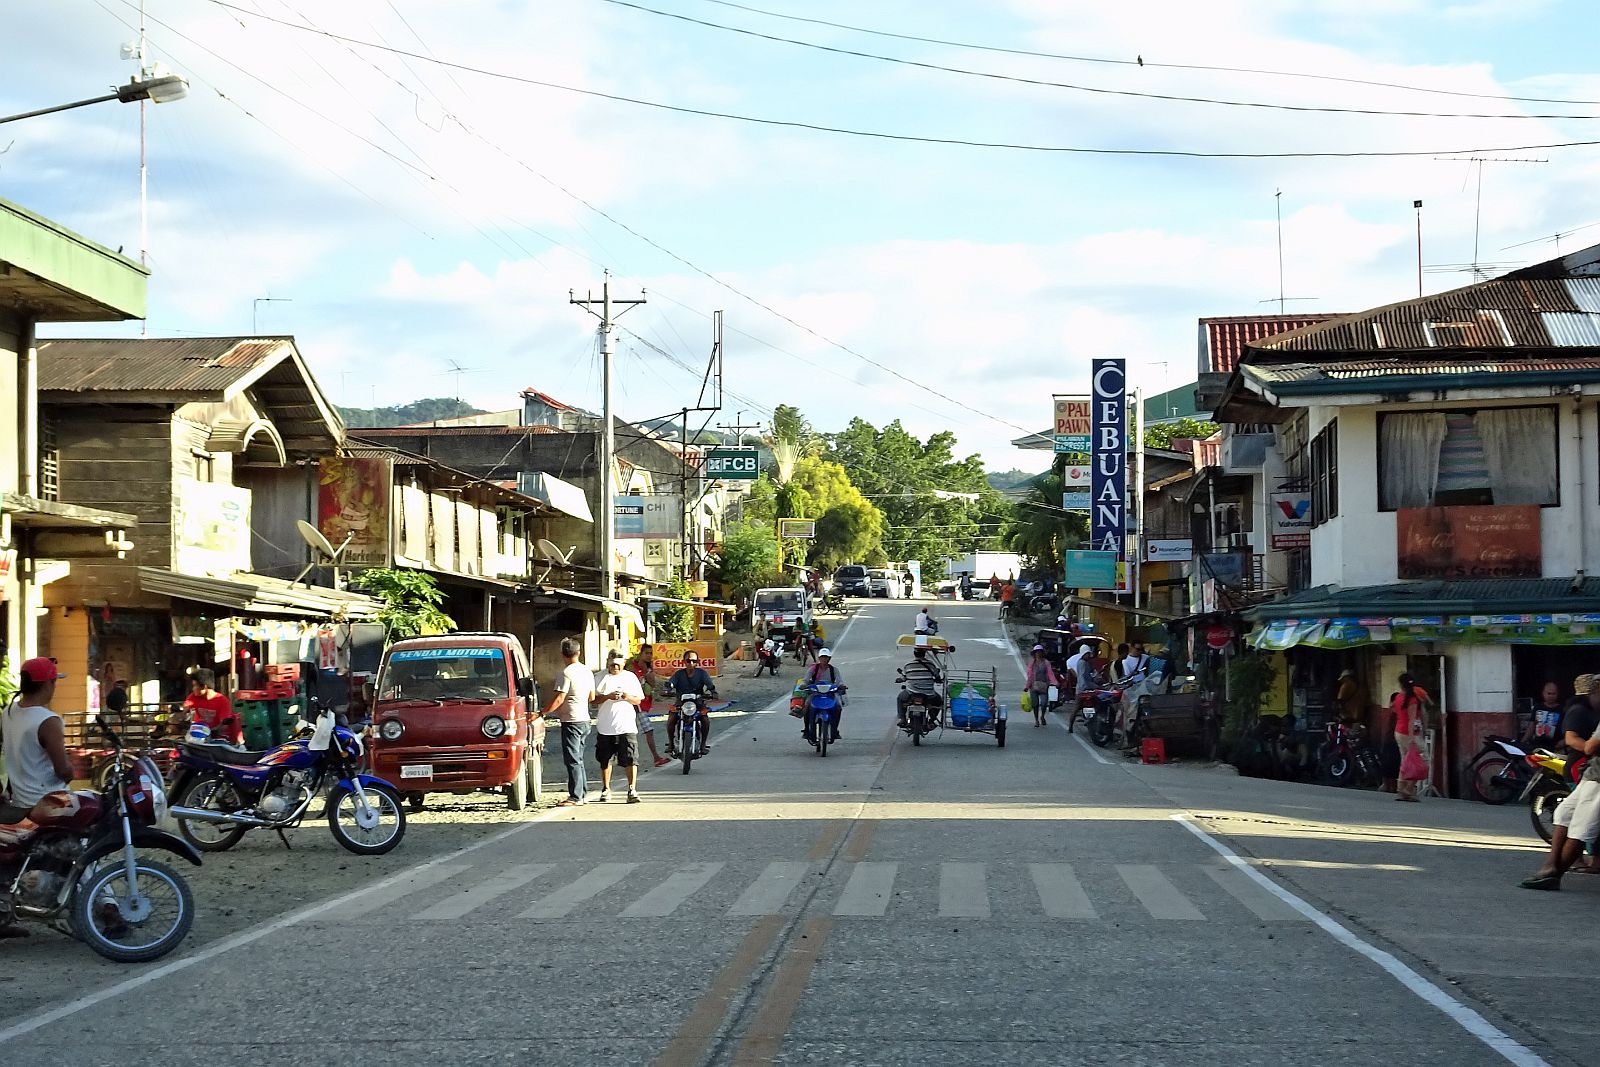 PHILIPPINEN REISEN - ORTE - BOHOL - Touristische Ortsbeschreibung für Sierra Bullones